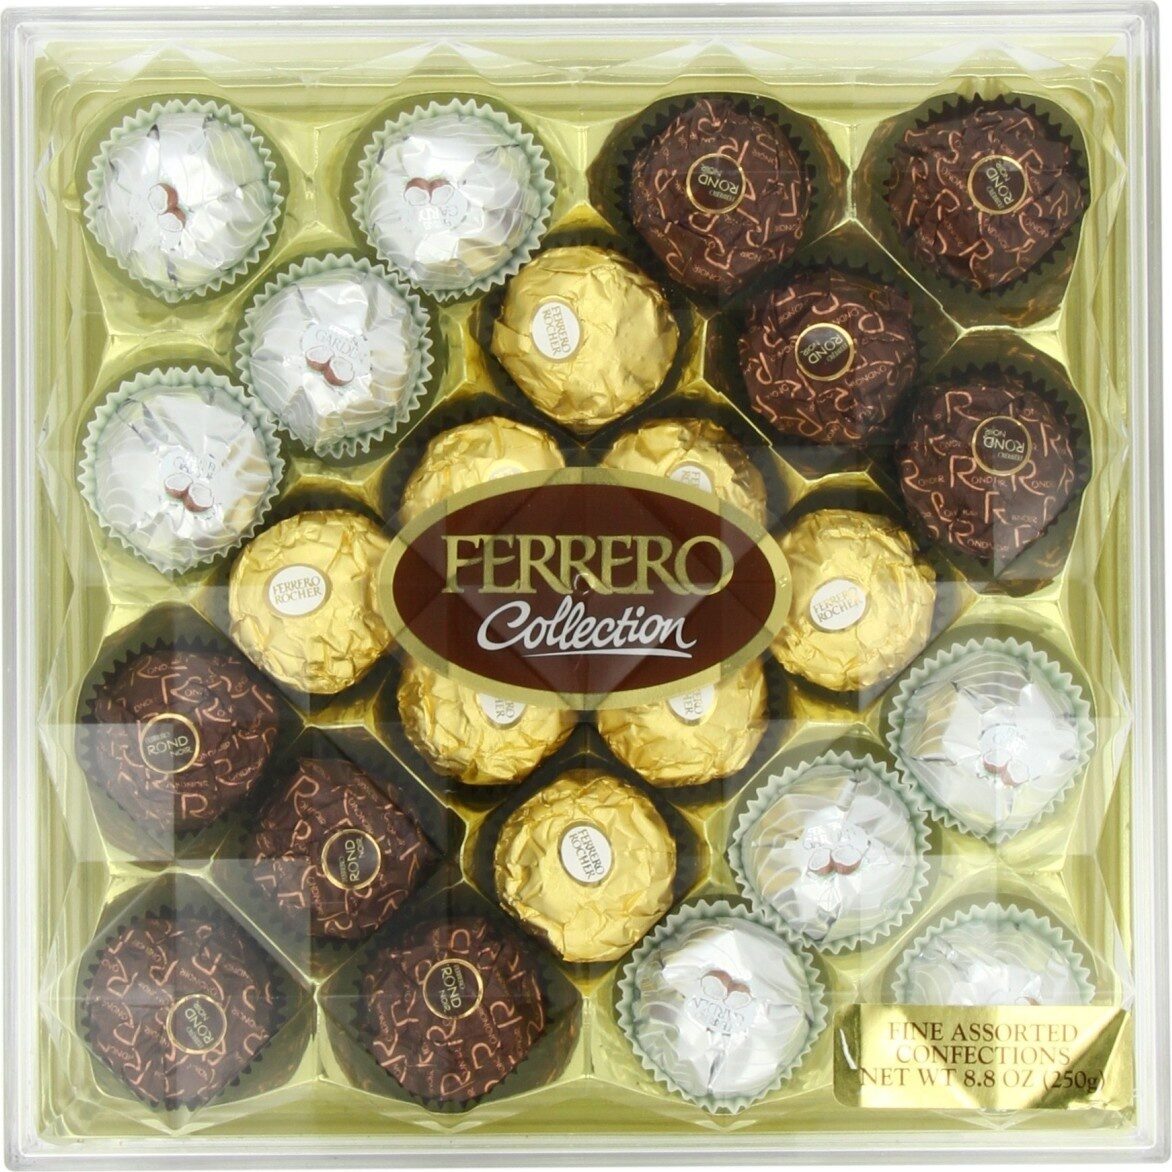 Ferrero collection piece gift box count - Produit - en